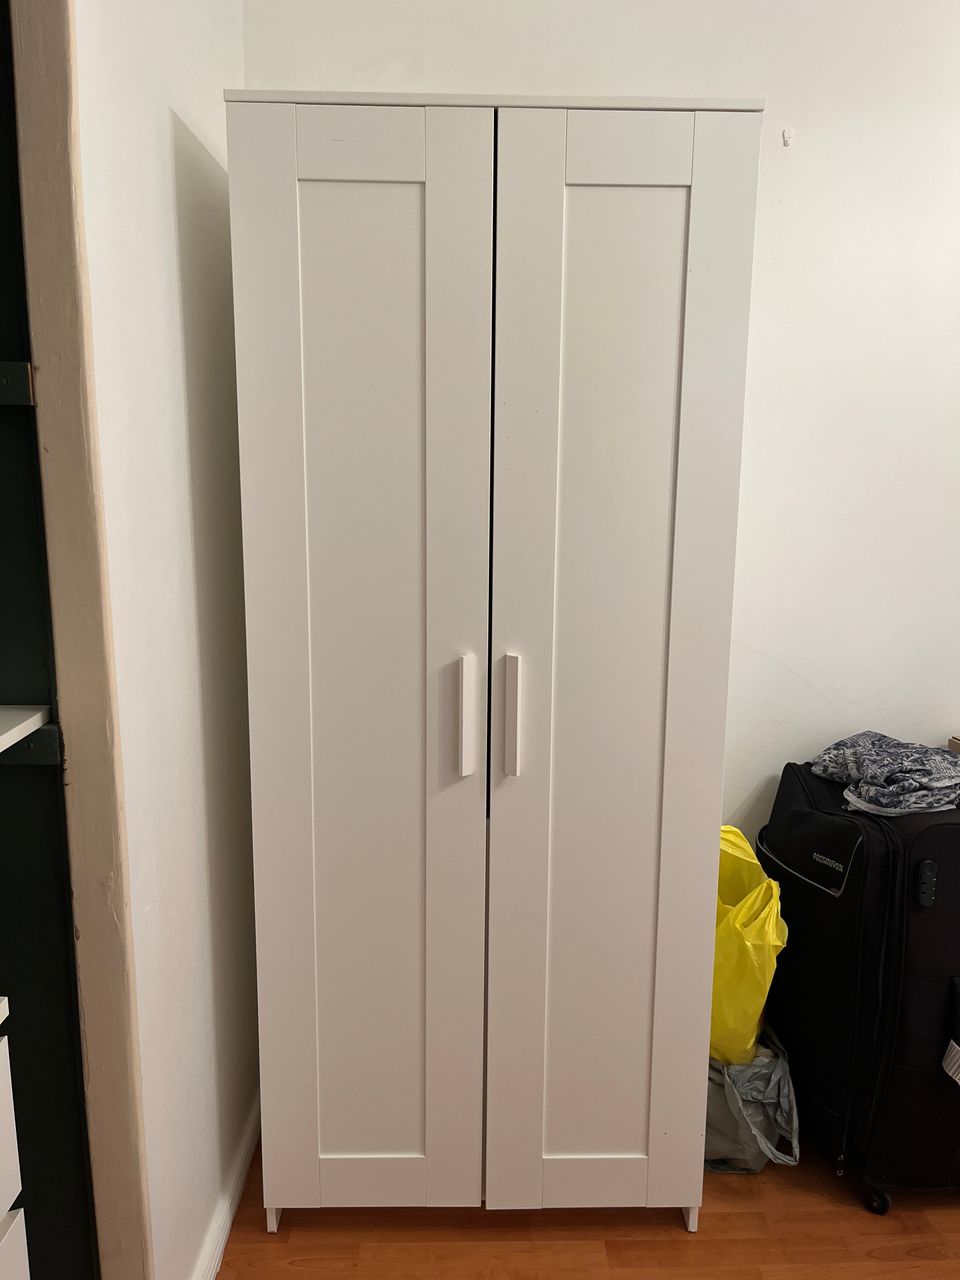 IKEA Brimnes Wardrobe